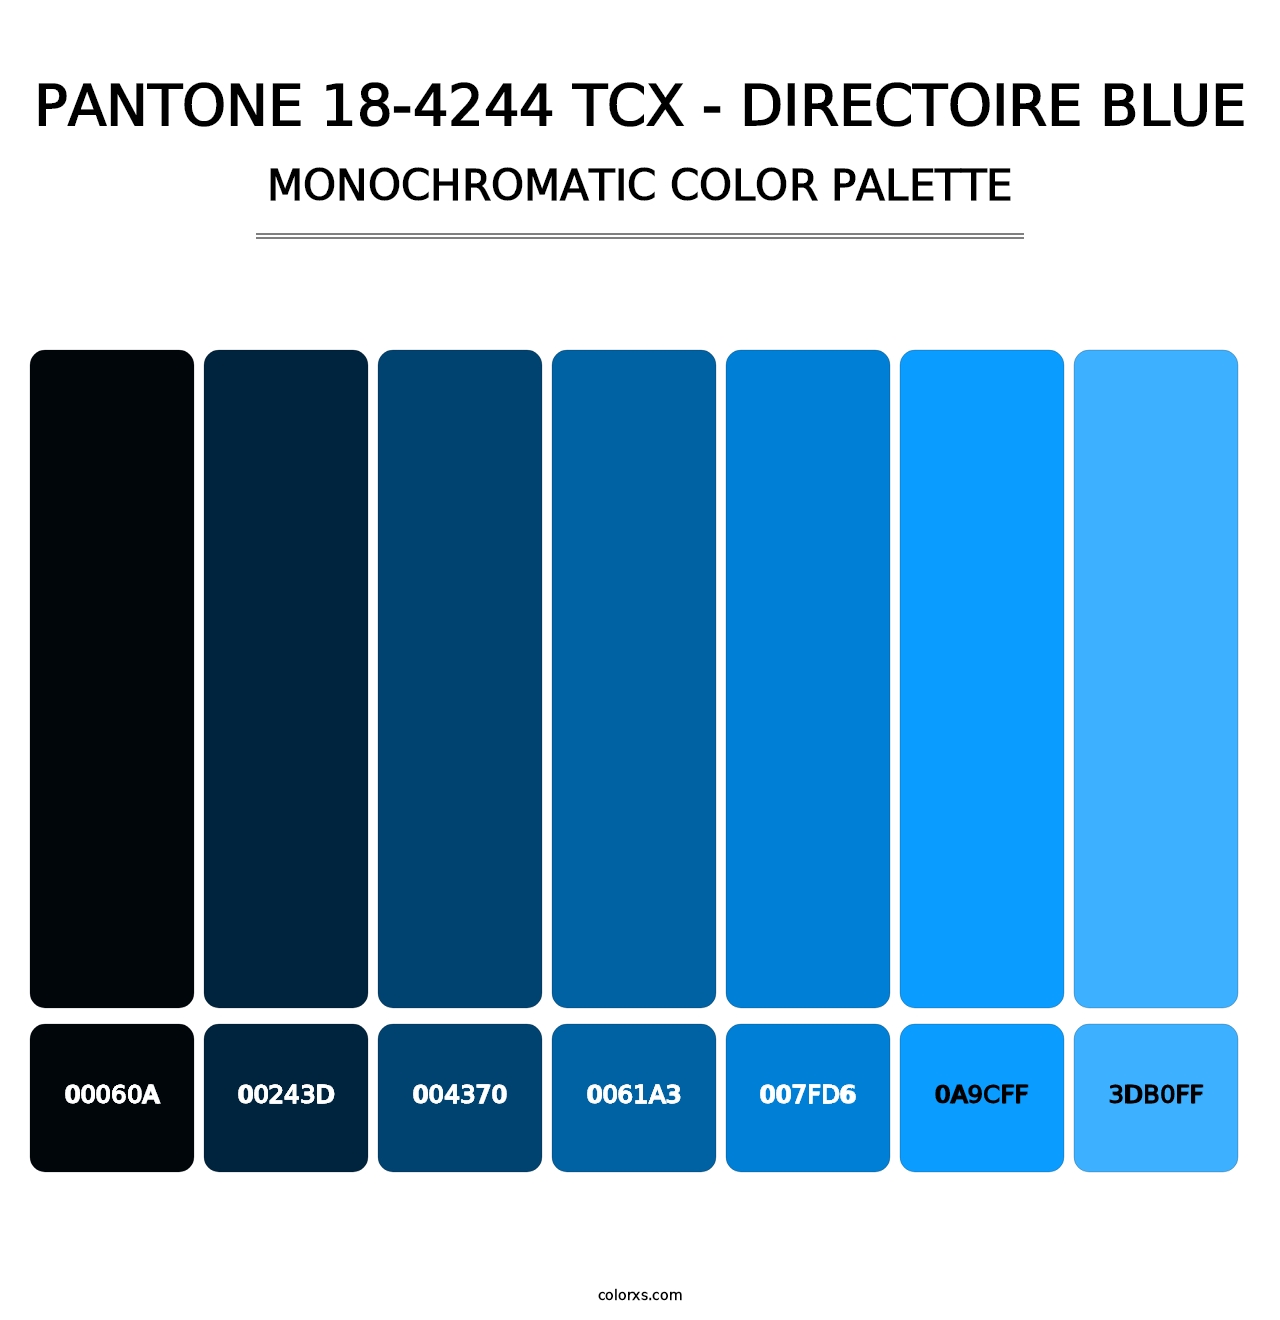 PANTONE 18-4244 TCX - Directoire Blue - Monochromatic Color Palette